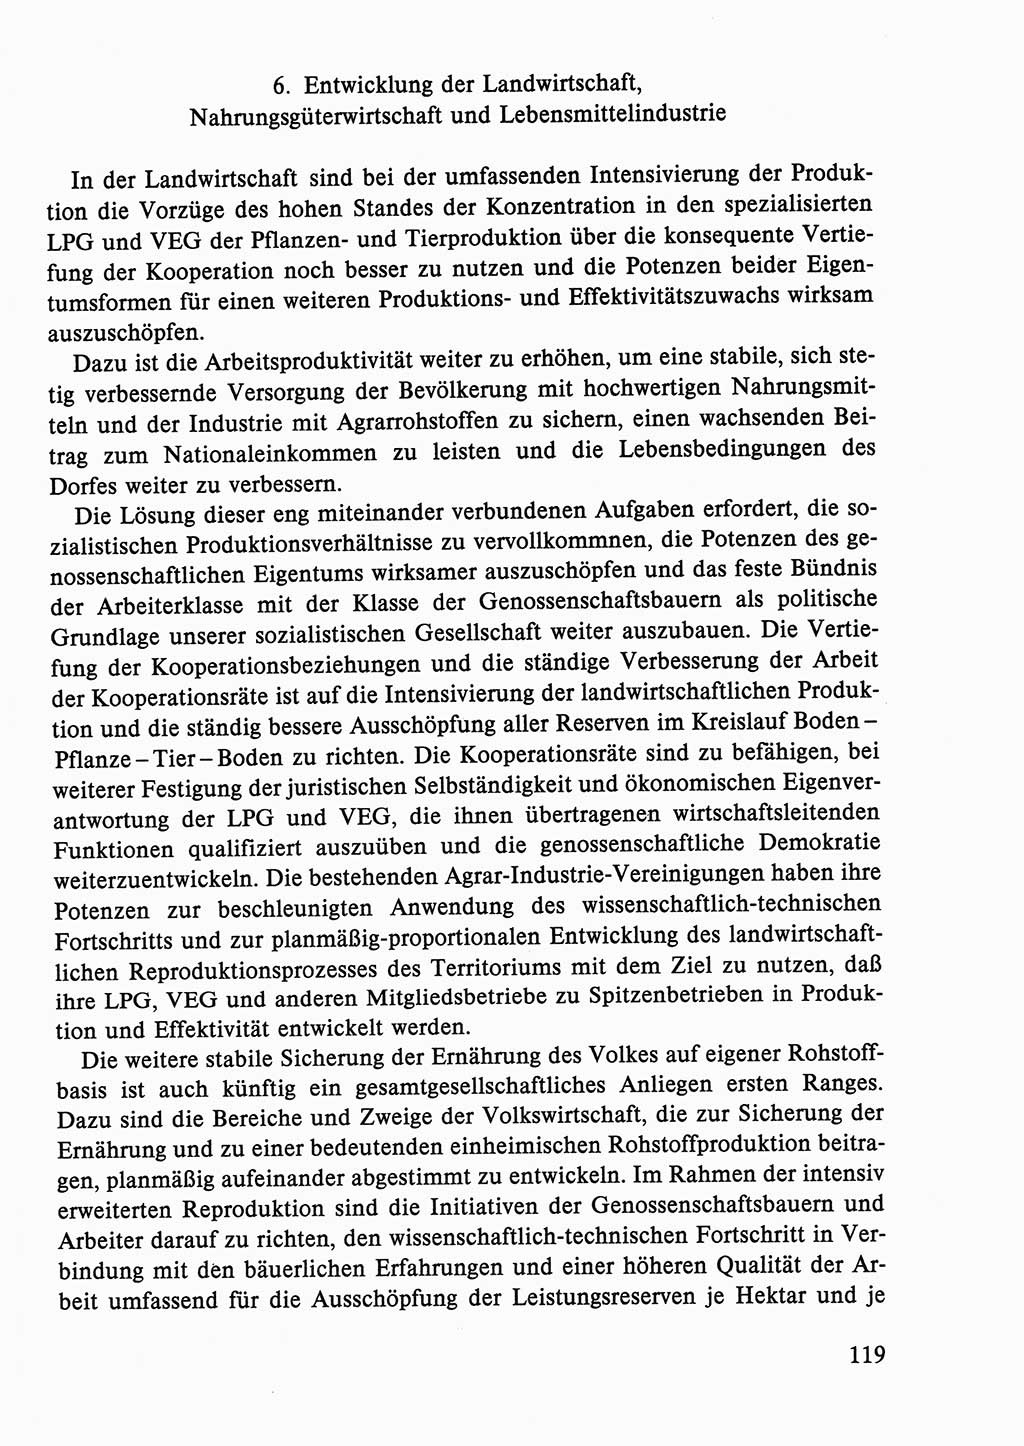 Dokumente der Sozialistischen Einheitspartei Deutschlands (SED) [Deutsche Demokratische Republik (DDR)] 1986-1987, Seite 119 (Dok. SED DDR 1986-1987, S. 119)